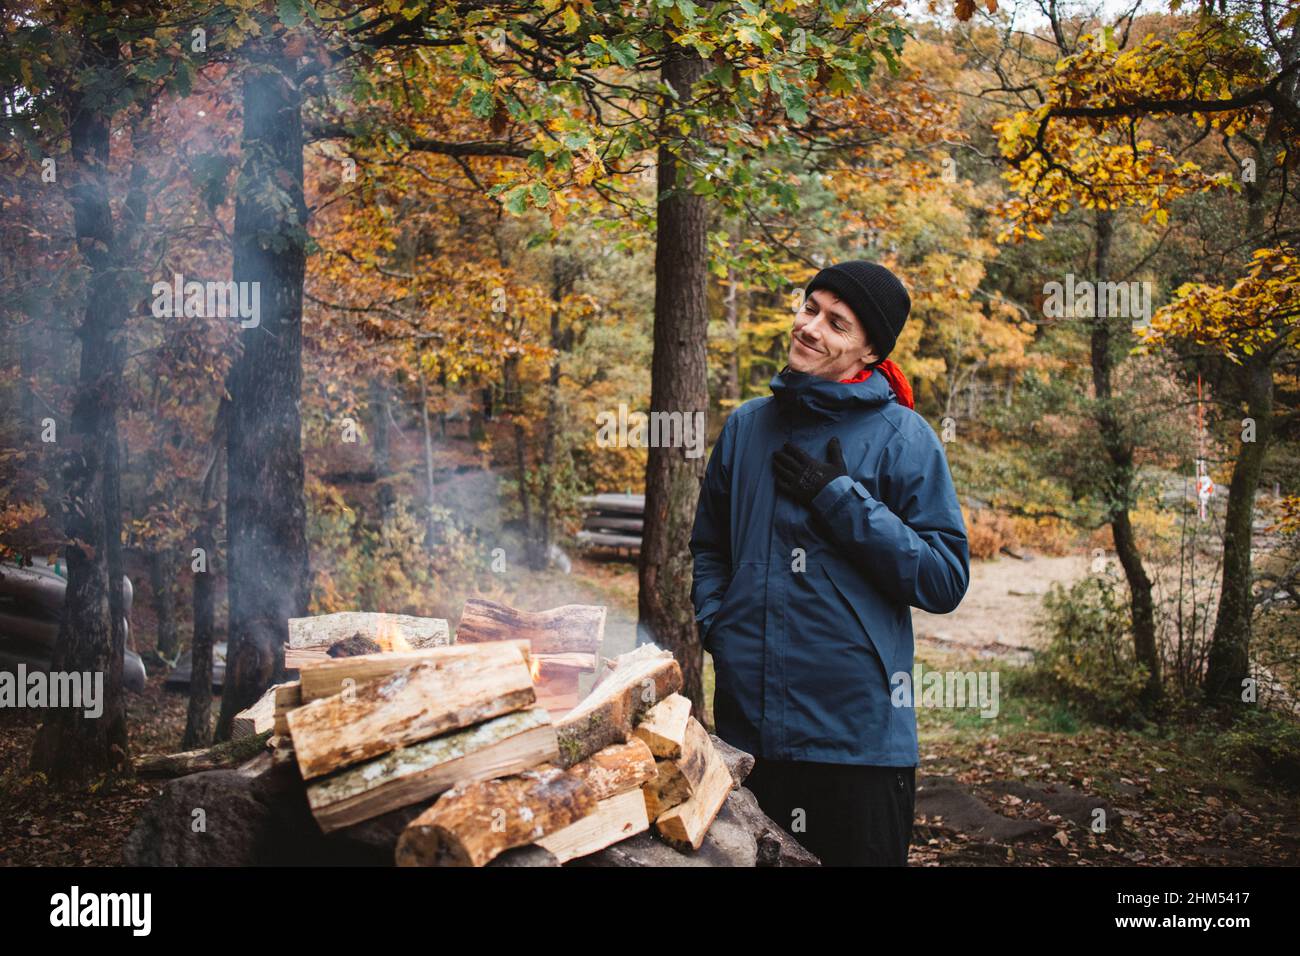 Mann, der im Wald Lagerfeuer macht Stockfoto